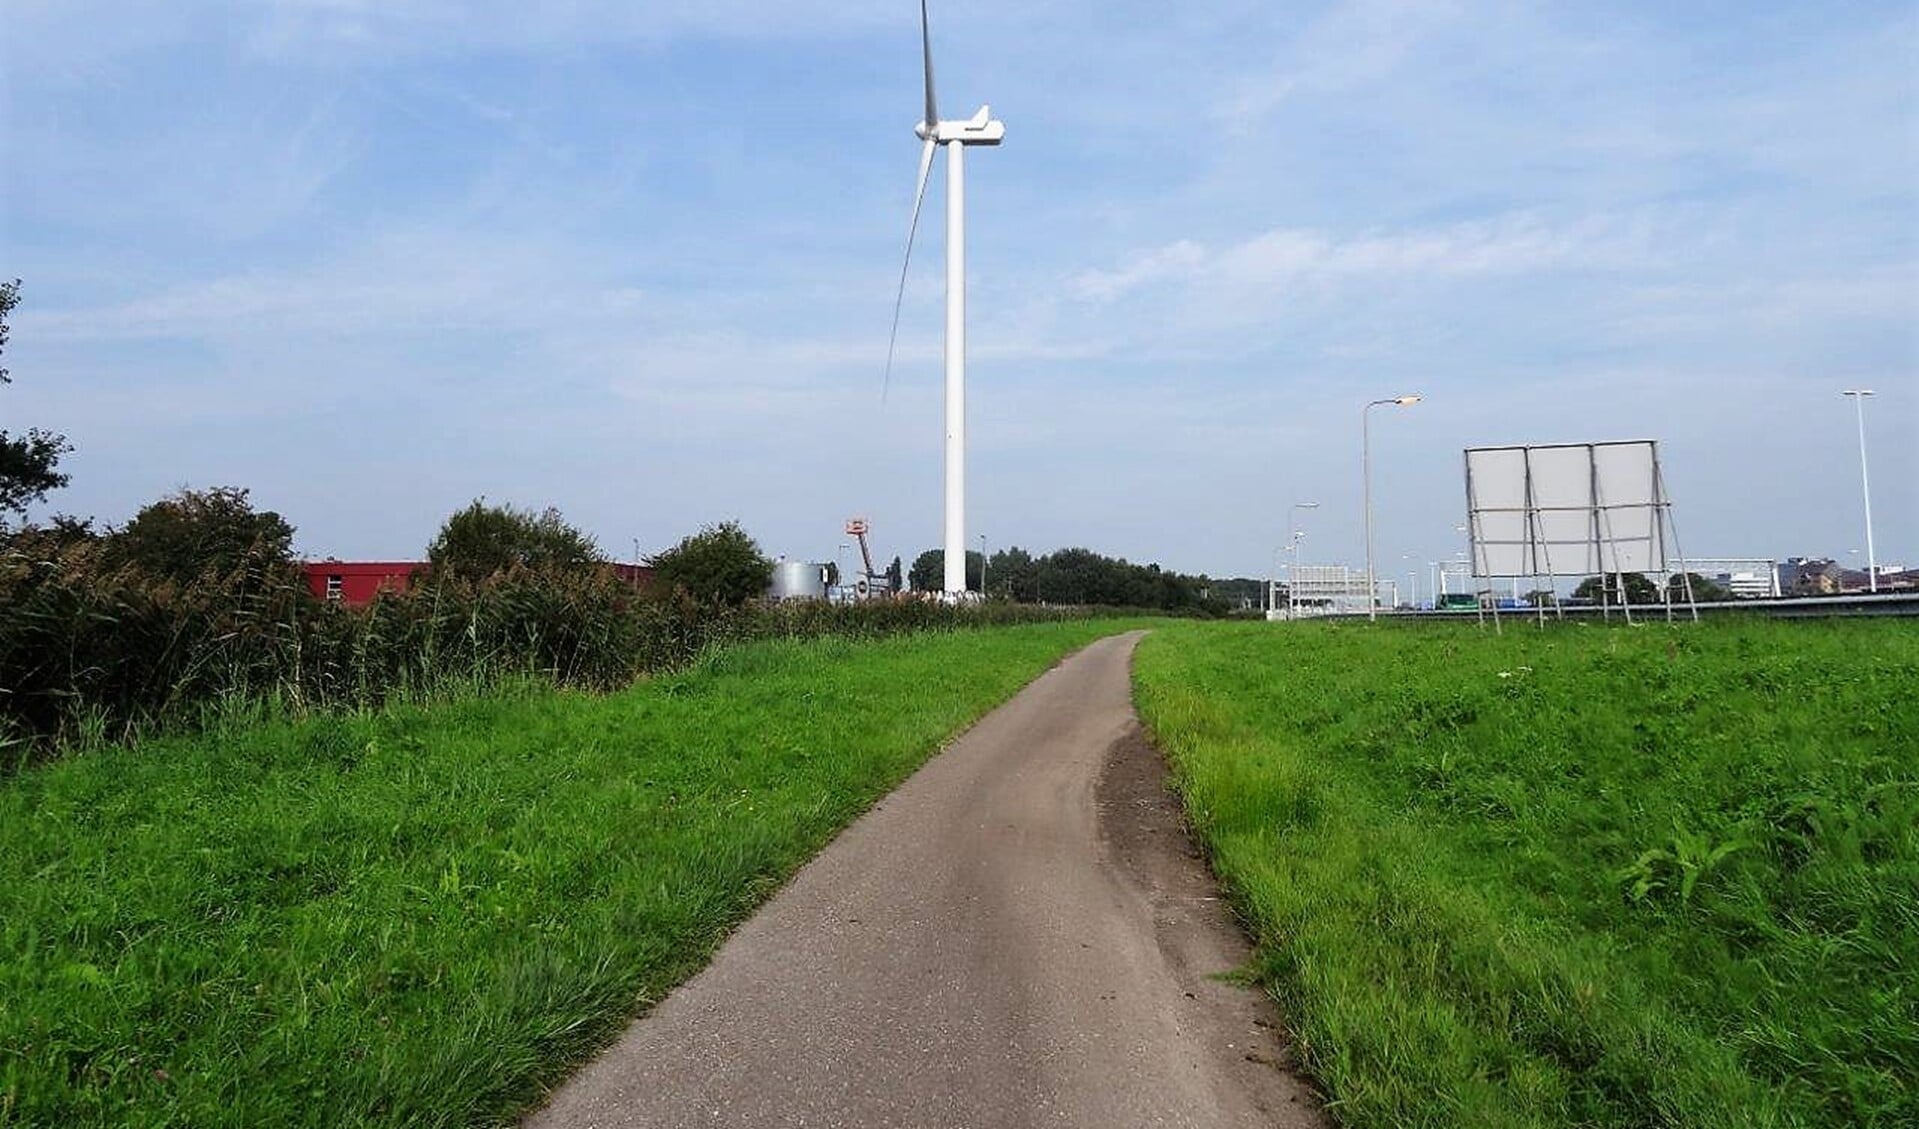 De windturbine, gezien vanaf de rijksweg. Rijkswaterstaat moet er nog een vergunning voor afgeven (foto: Ap de Heus).